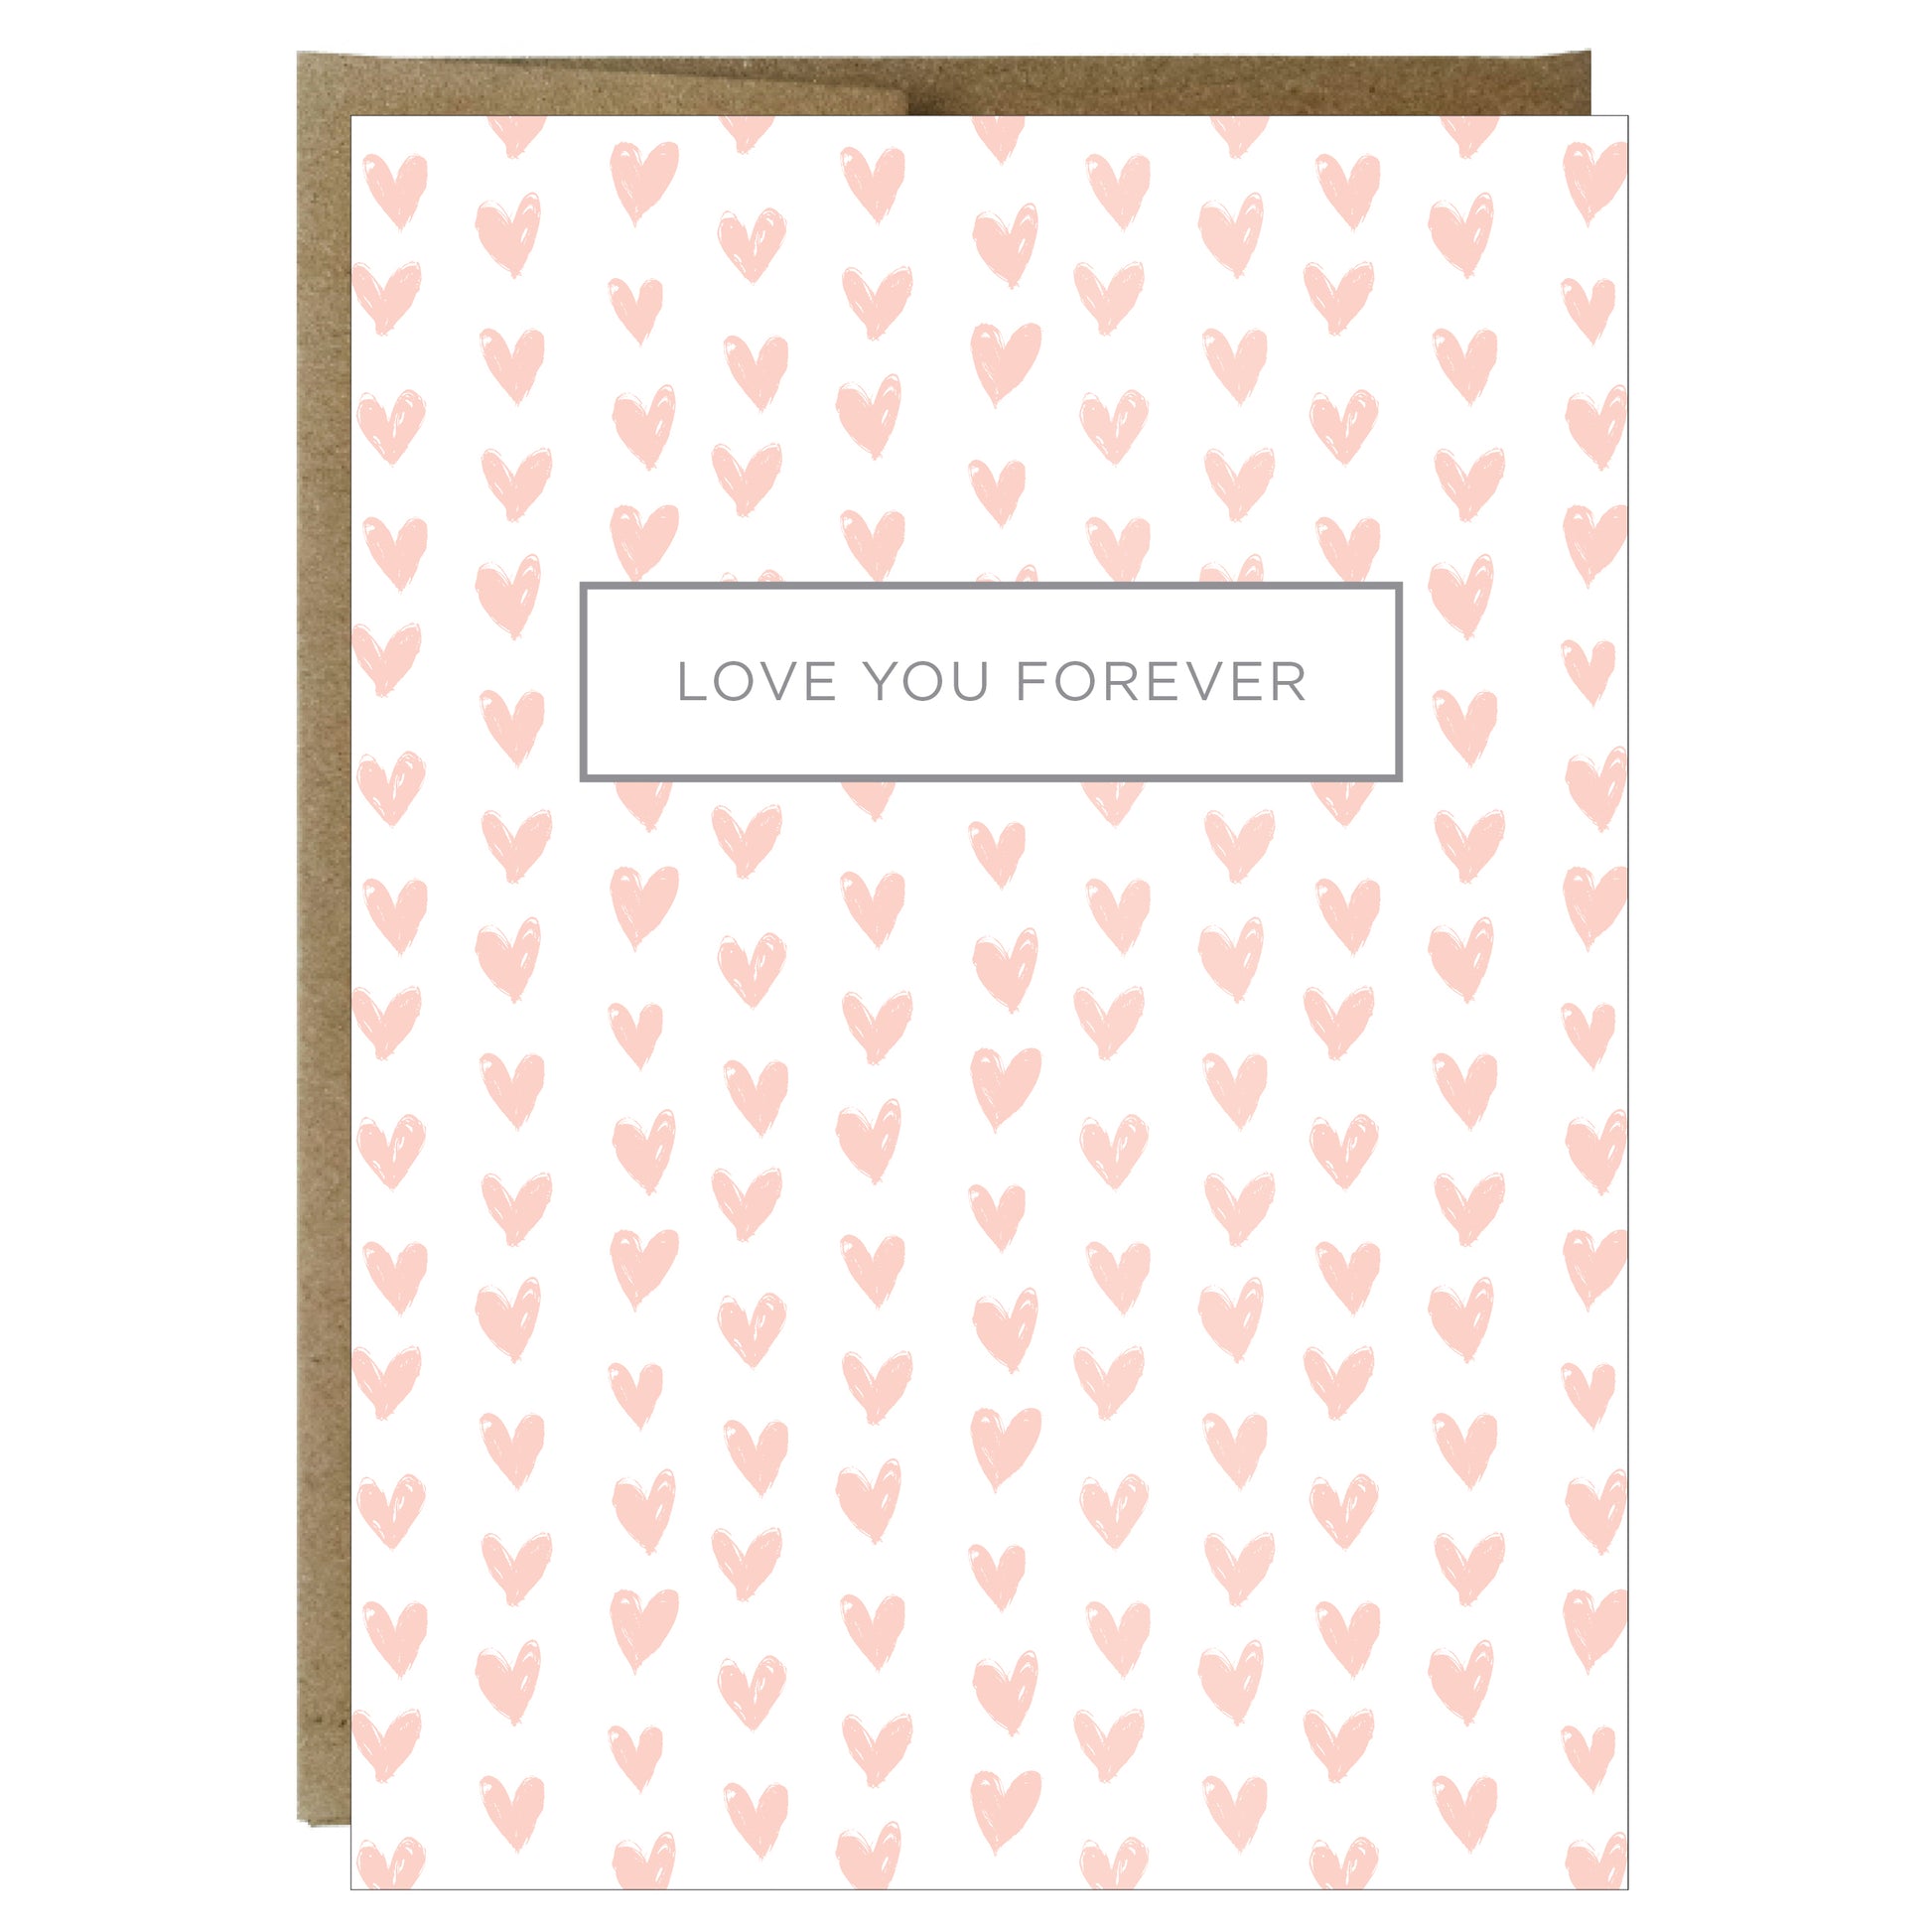 Love You Forever Greeting Card - Idea Chíc